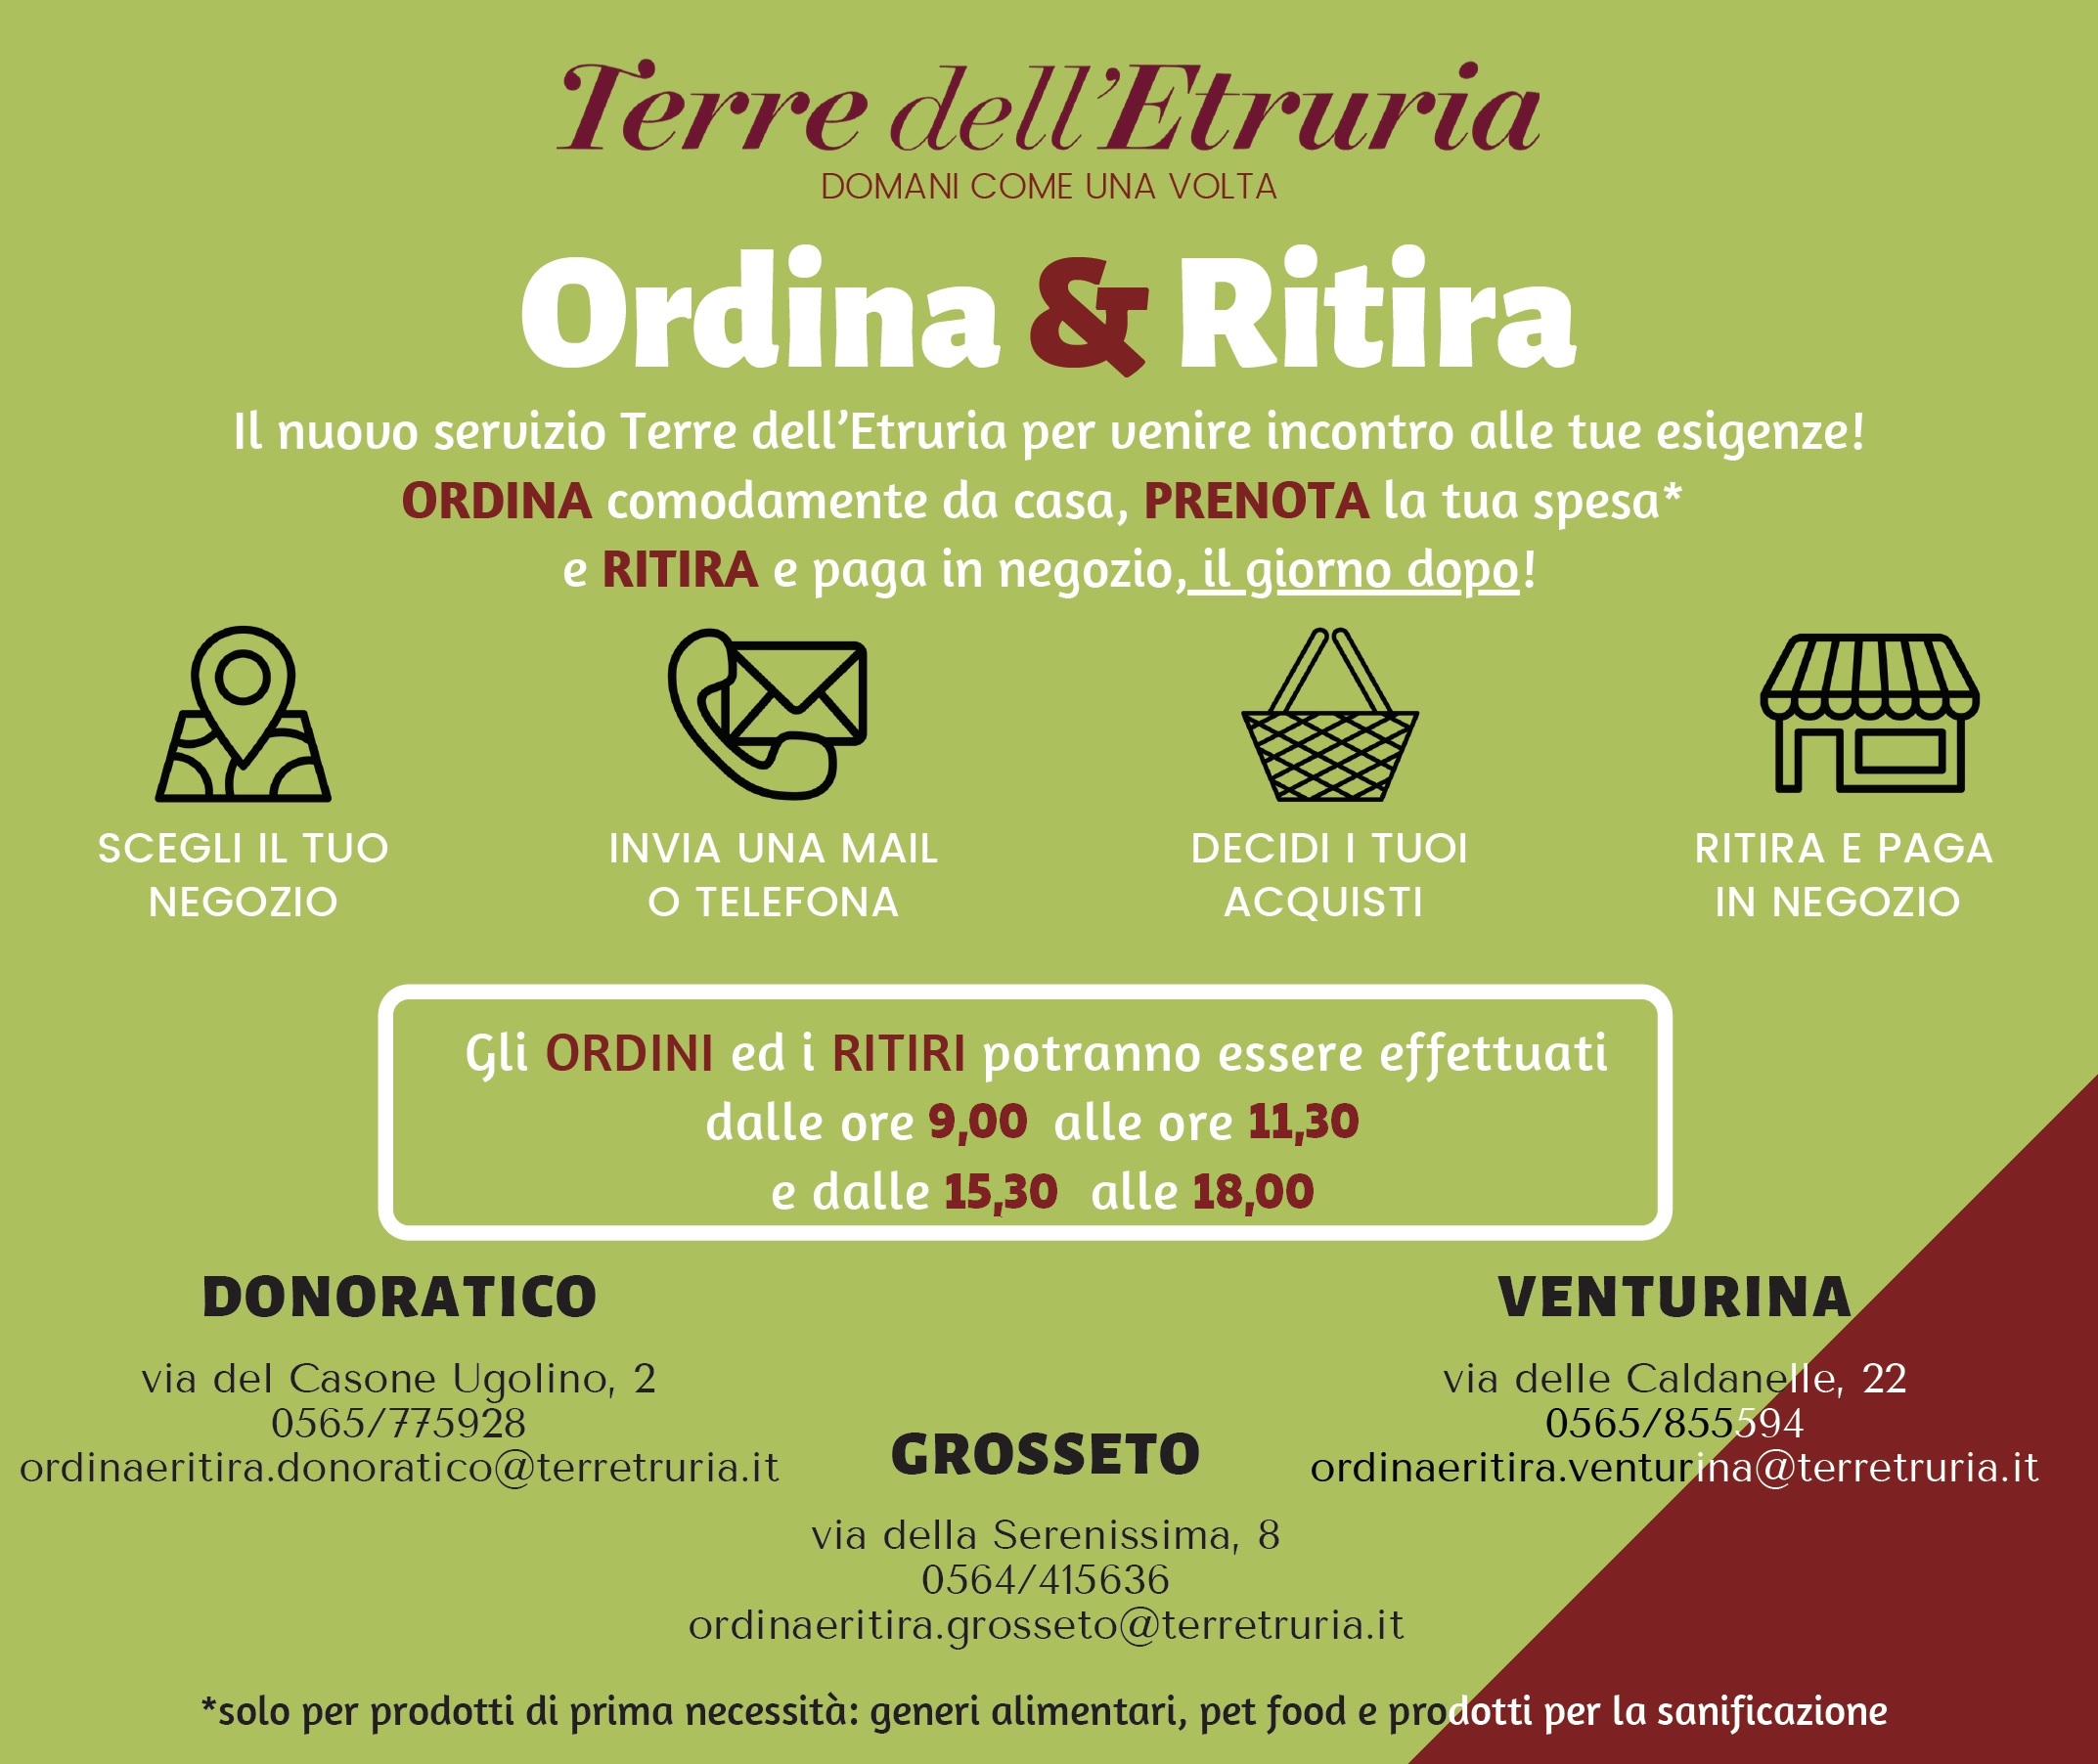 Ordina&Ritira, il nuovo servizio attivo su Donoratico, Grosseto e Venturina